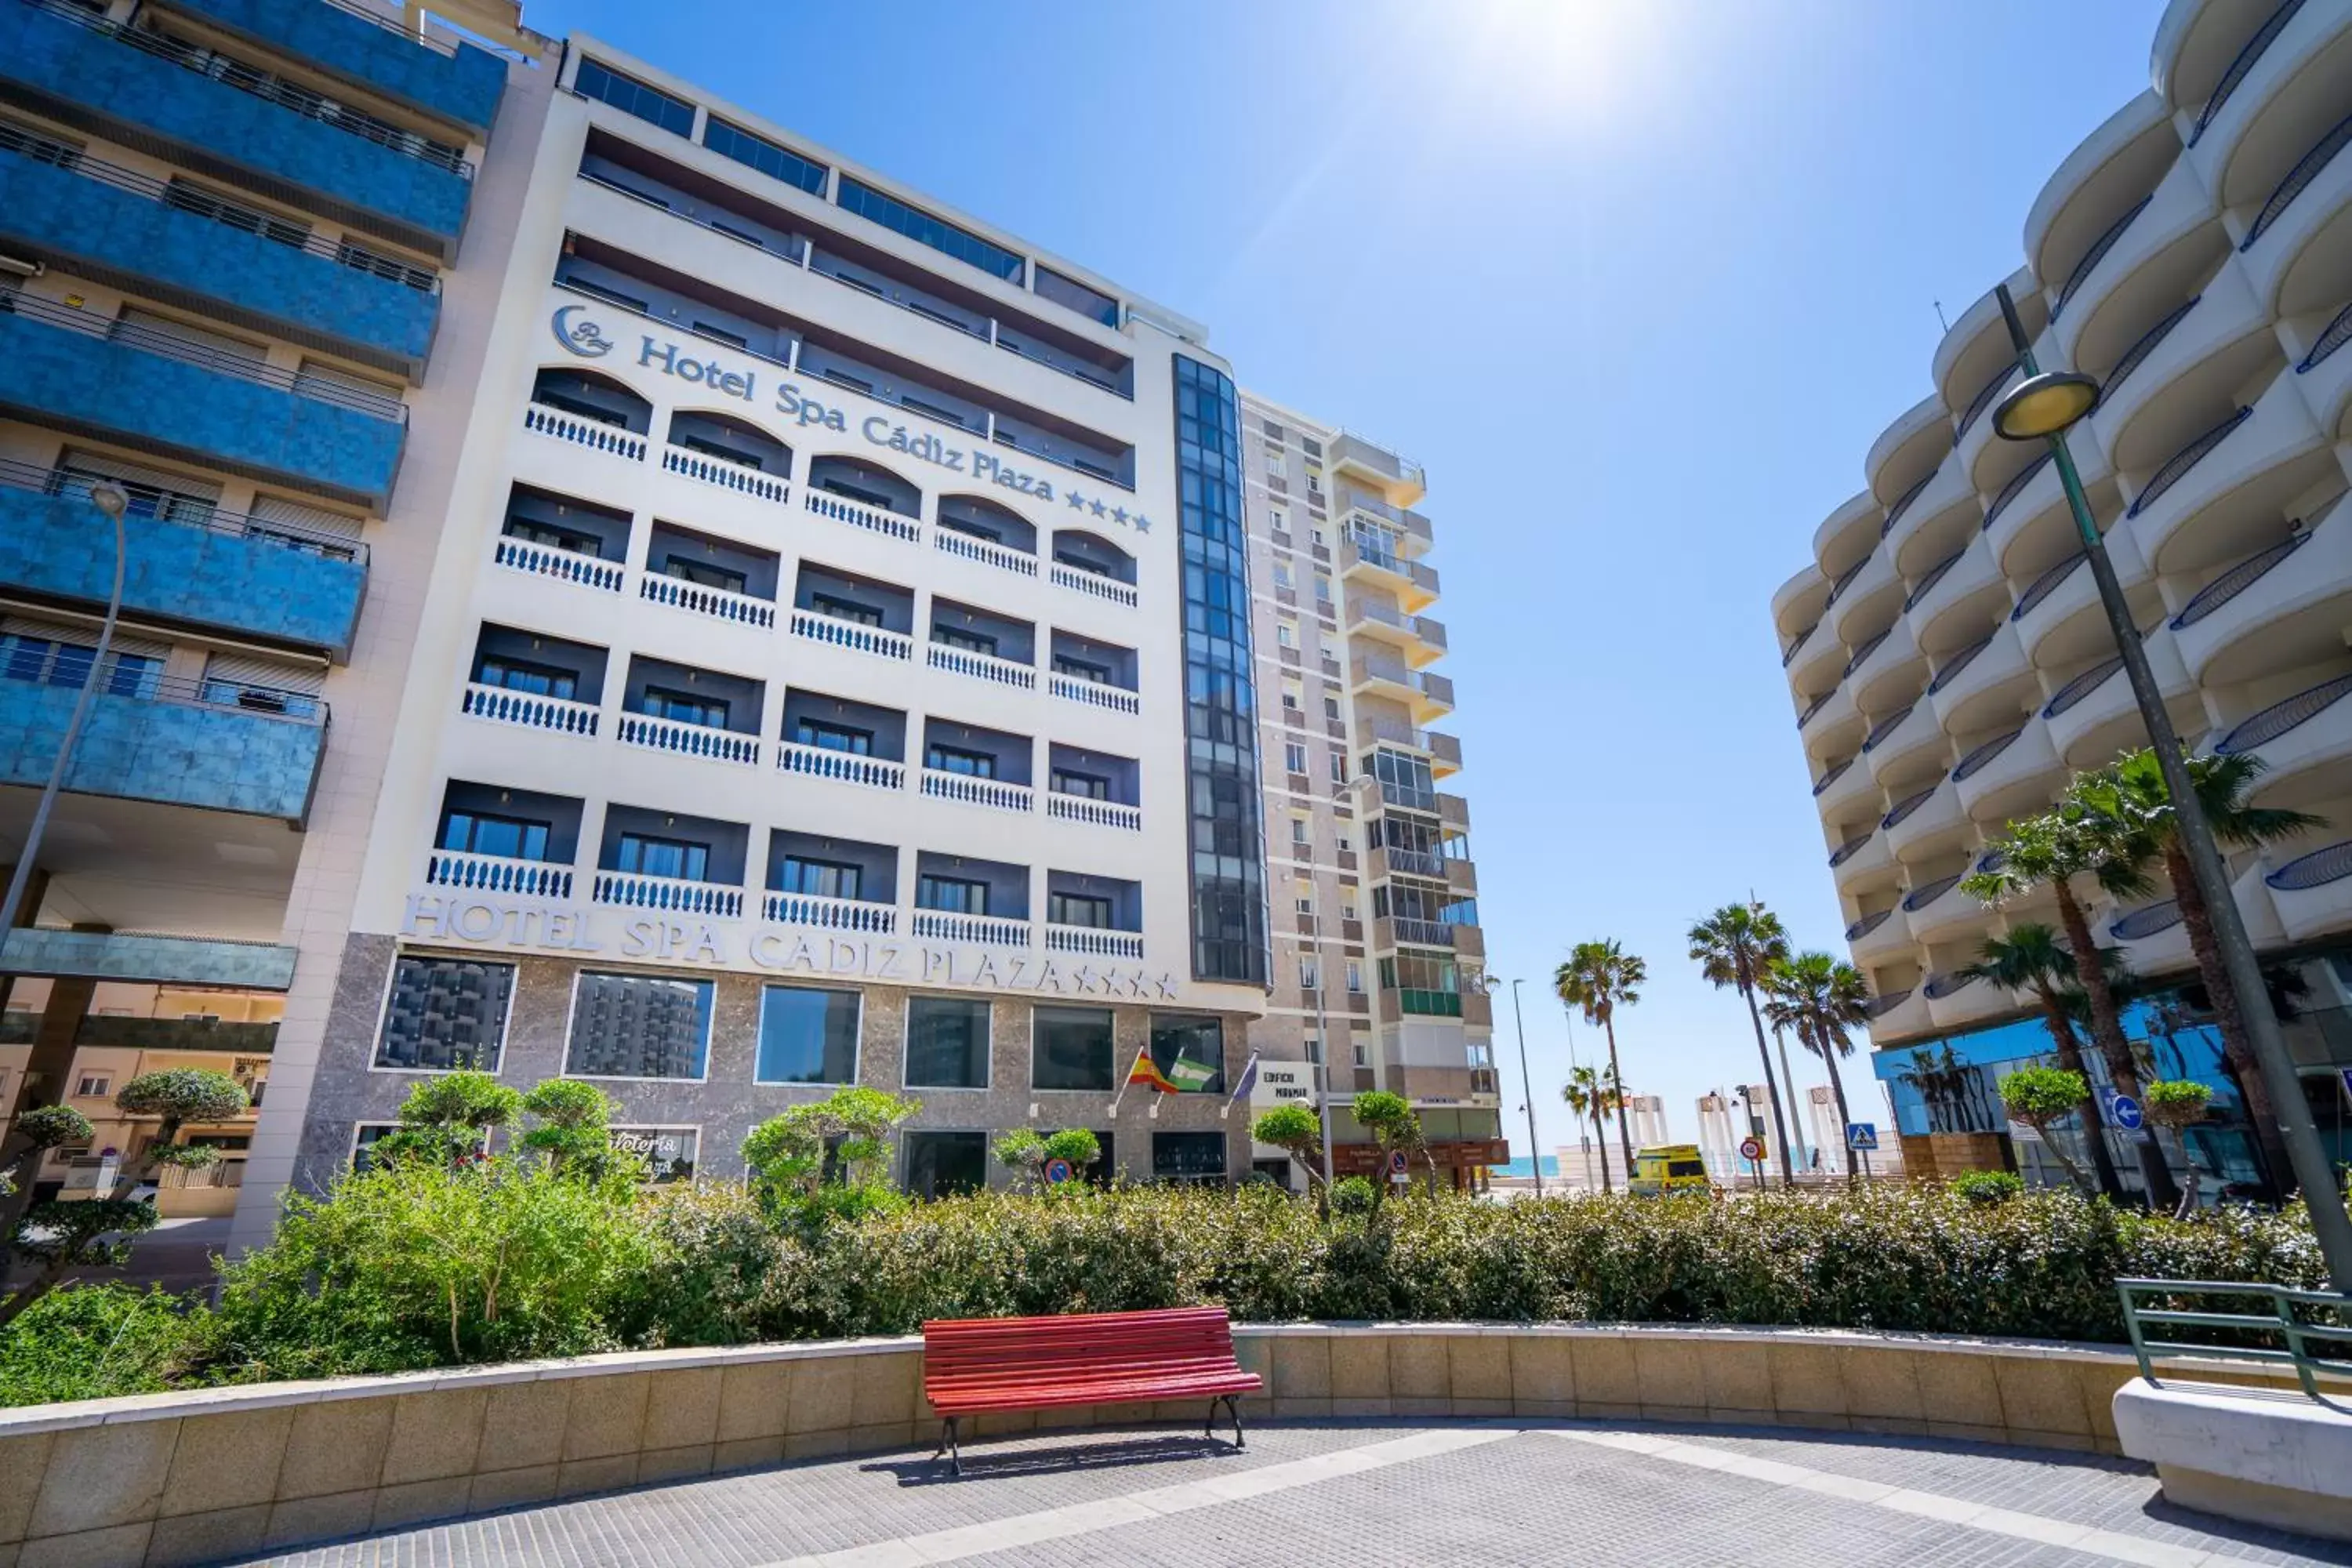 Property building, Swimming Pool in Hotel Spa Cádiz Plaza